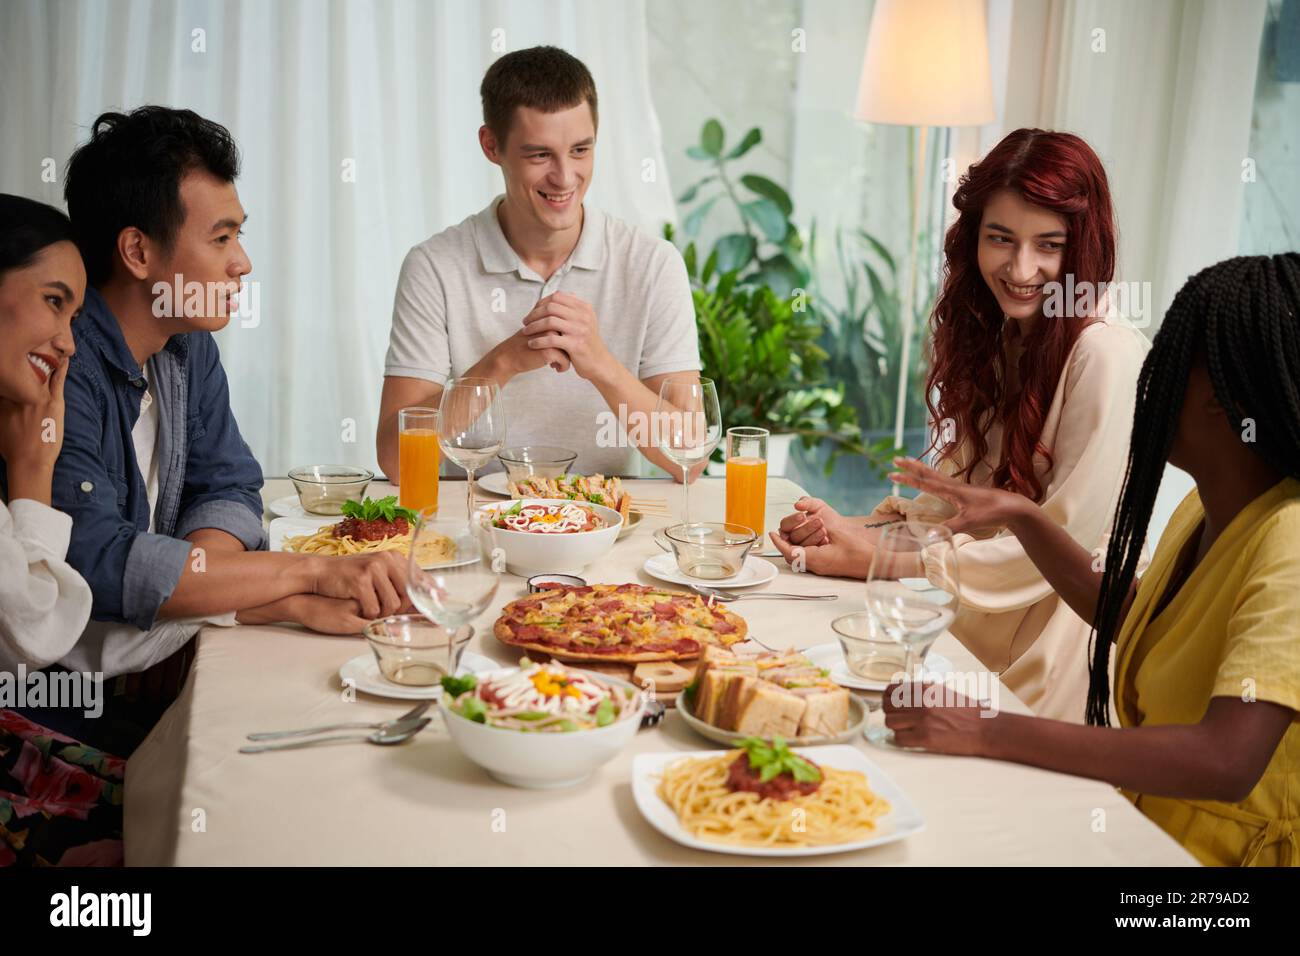 Eine Gruppe junger interkultureller Menschen in eleganter Freizeitkleidung, die sich am Serviertisch unterhalten und ein Abendessen mit hausgemachtem Essen genießen Stockfoto